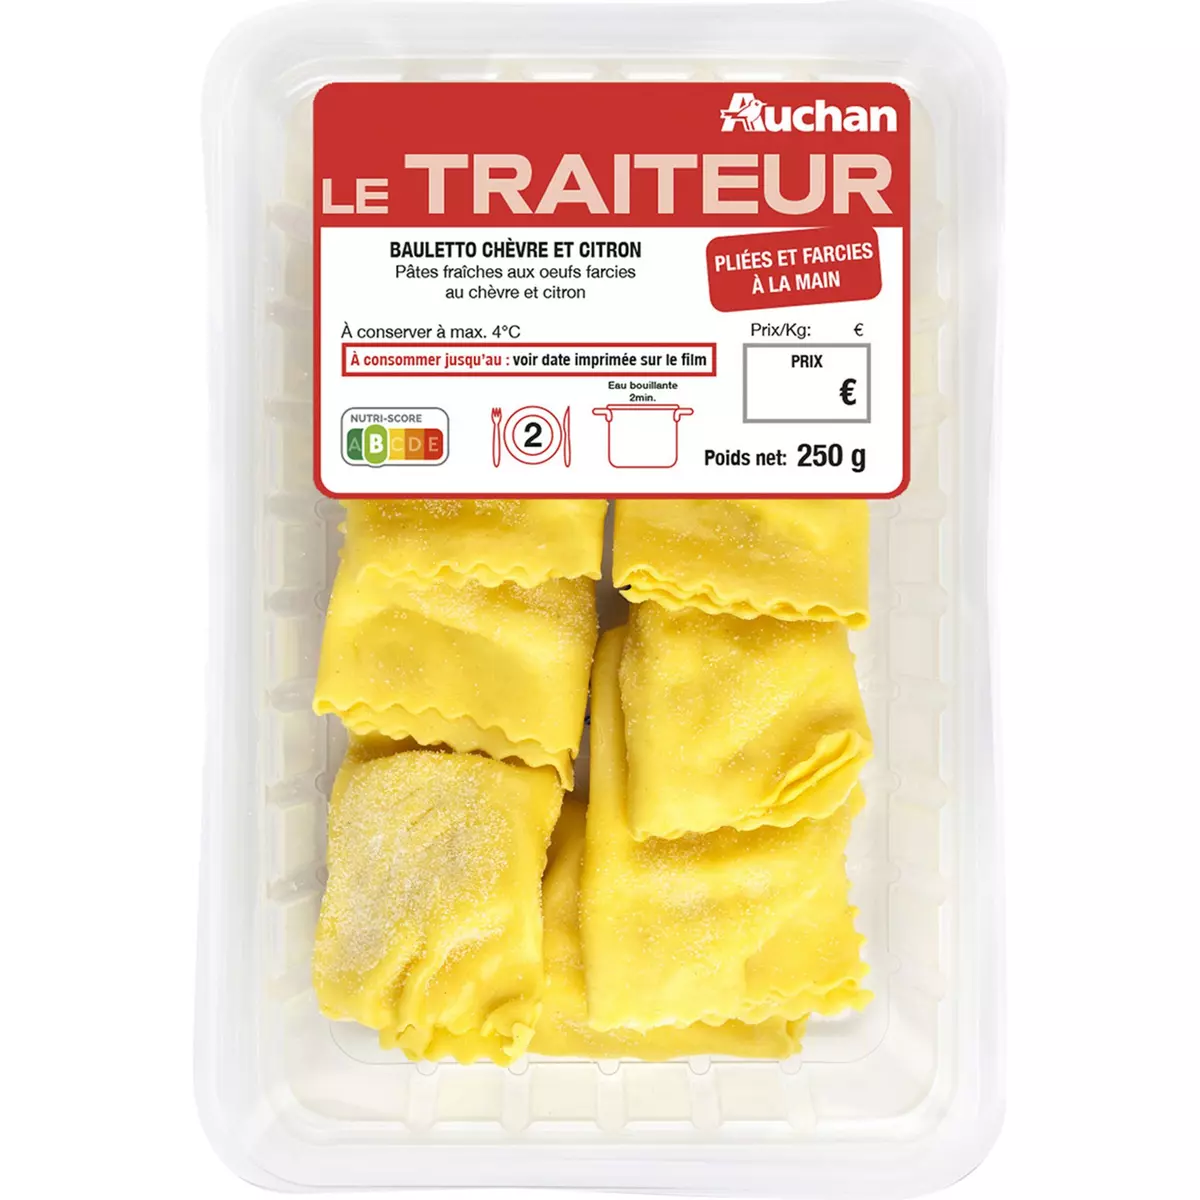 AUCHAN LE TRAITEUR Bauletto chèvre citron pâtes aux oeufs frais 2 portions 250g